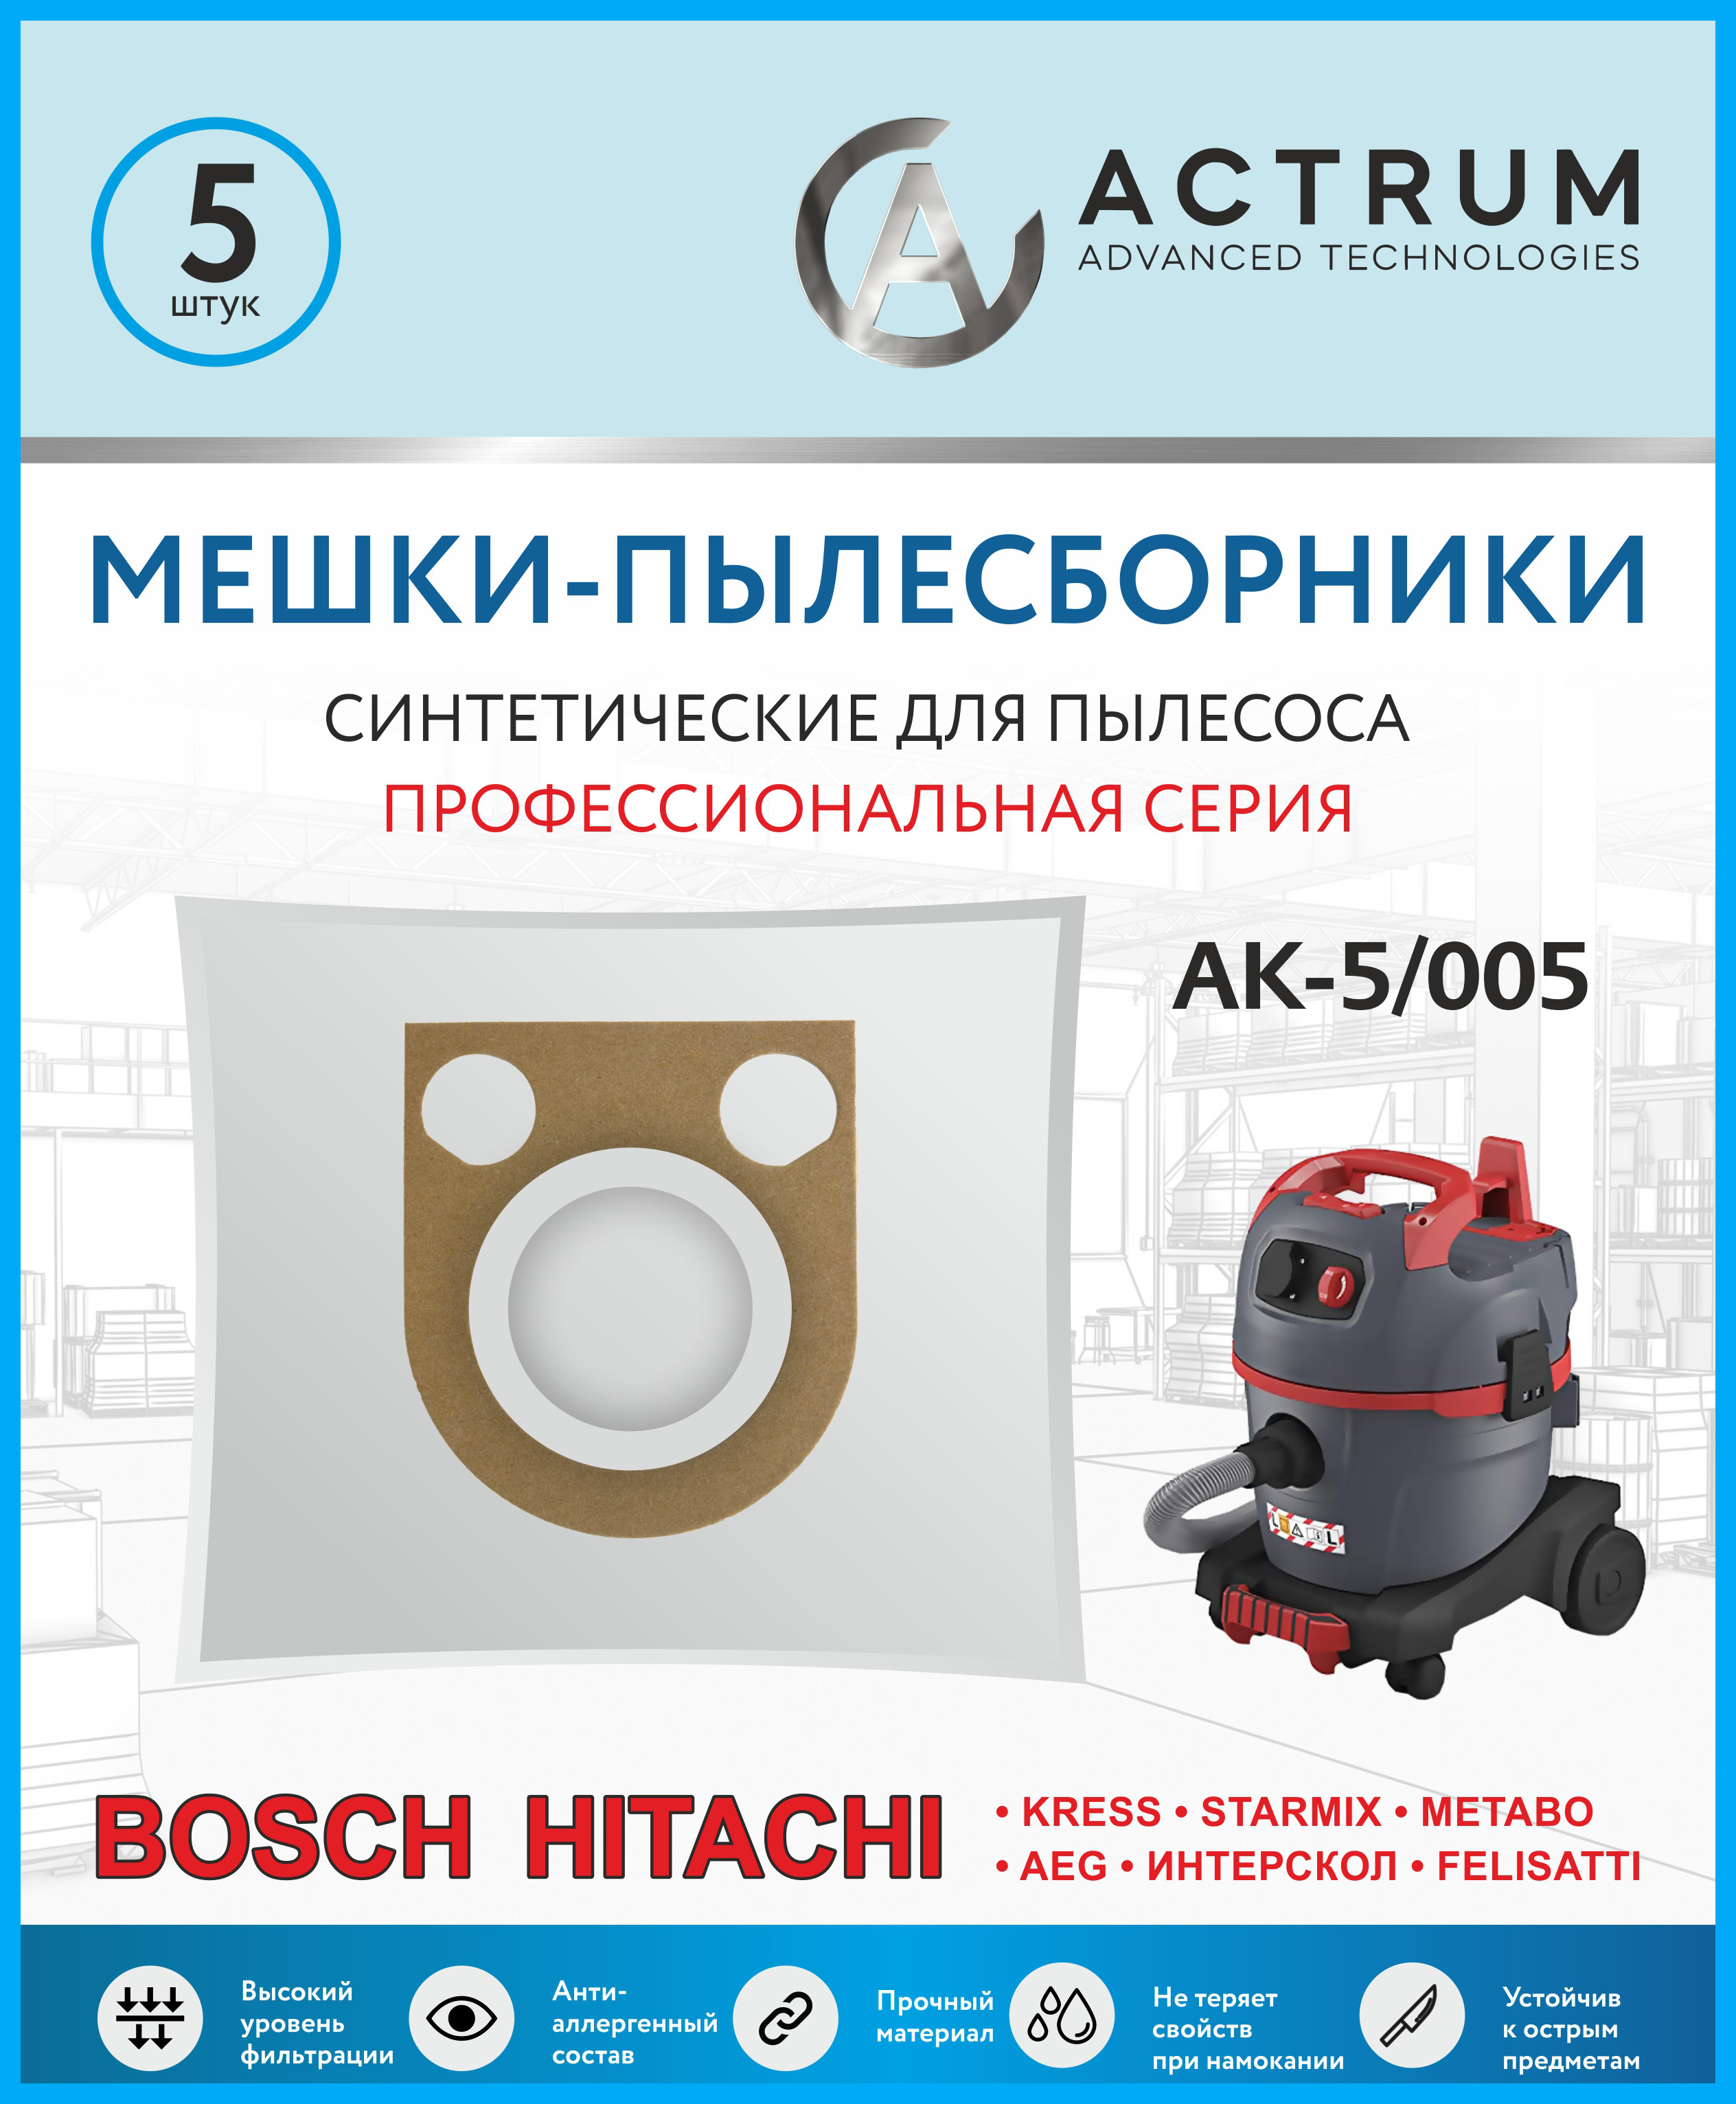 Пылесборники Actrum AK-5/005 для BOSCH GAS 25 Professional, METABO, HITACHI, STARMIX пылесборники для пылесоса gas bosch